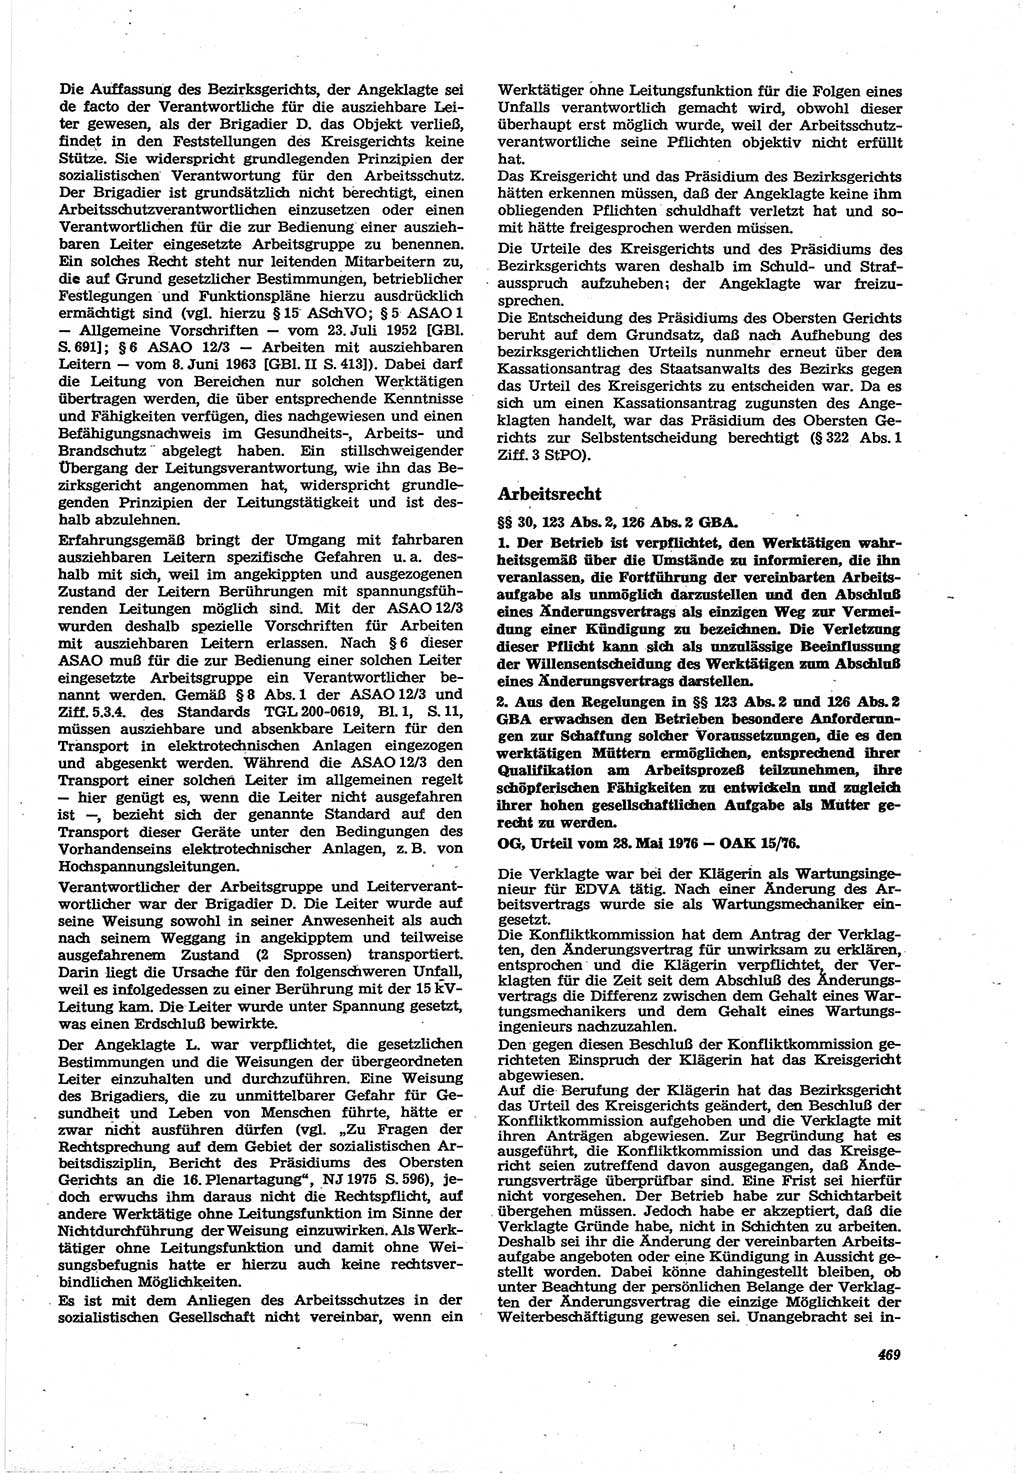 Neue Justiz (NJ), Zeitschrift für Recht und Rechtswissenschaft [Deutsche Demokratische Republik (DDR)], 30. Jahrgang 1976, Seite 469 (NJ DDR 1976, S. 469)